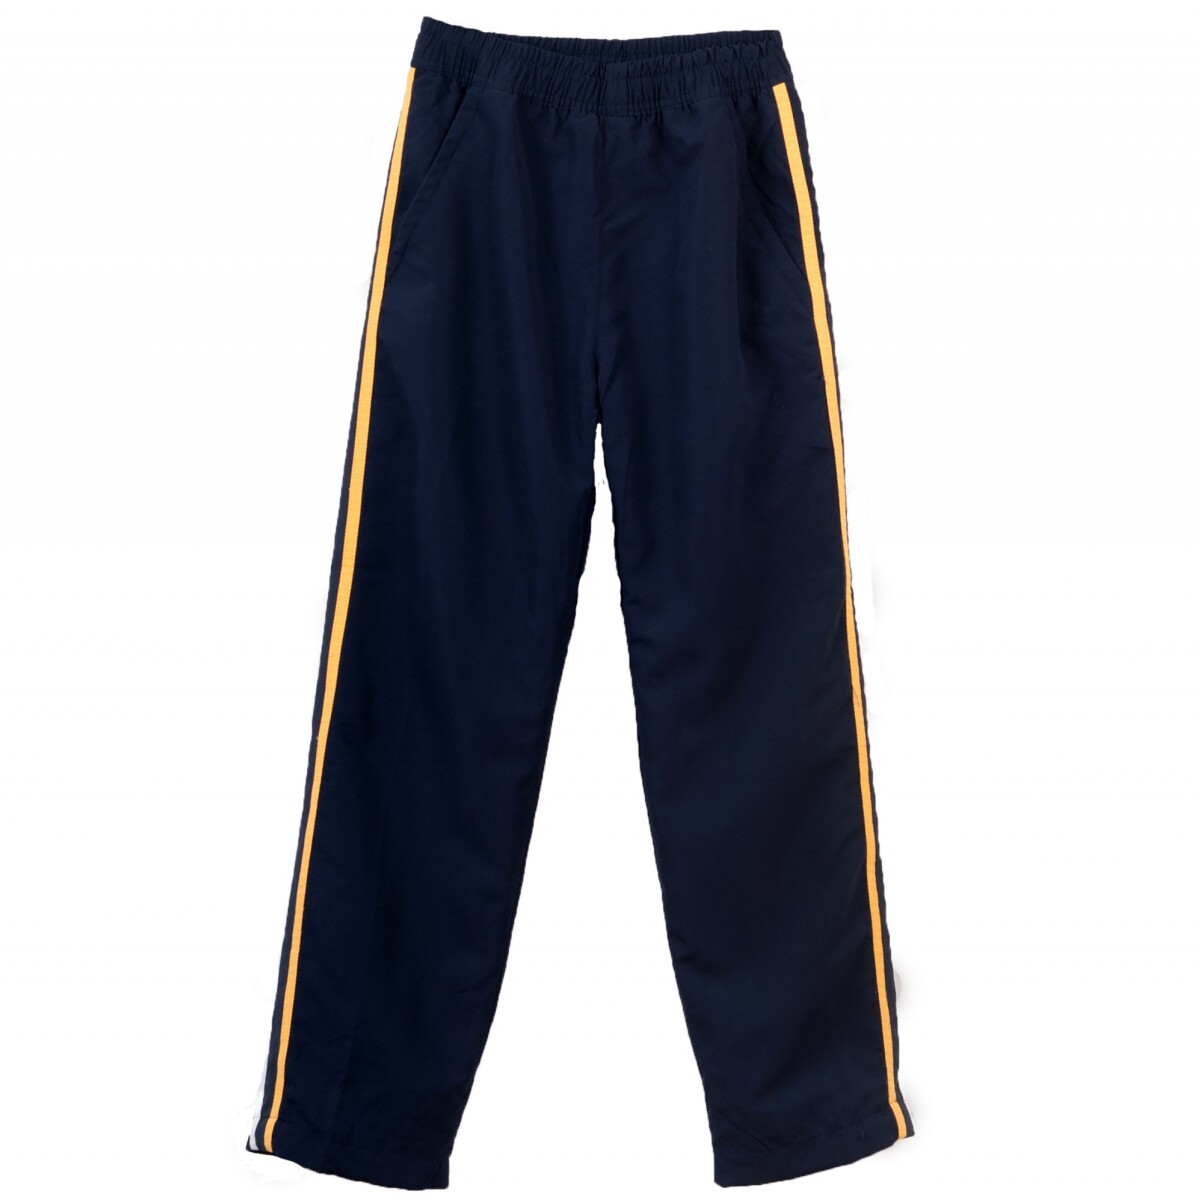 Pantalón deportivo Monte VI Navy